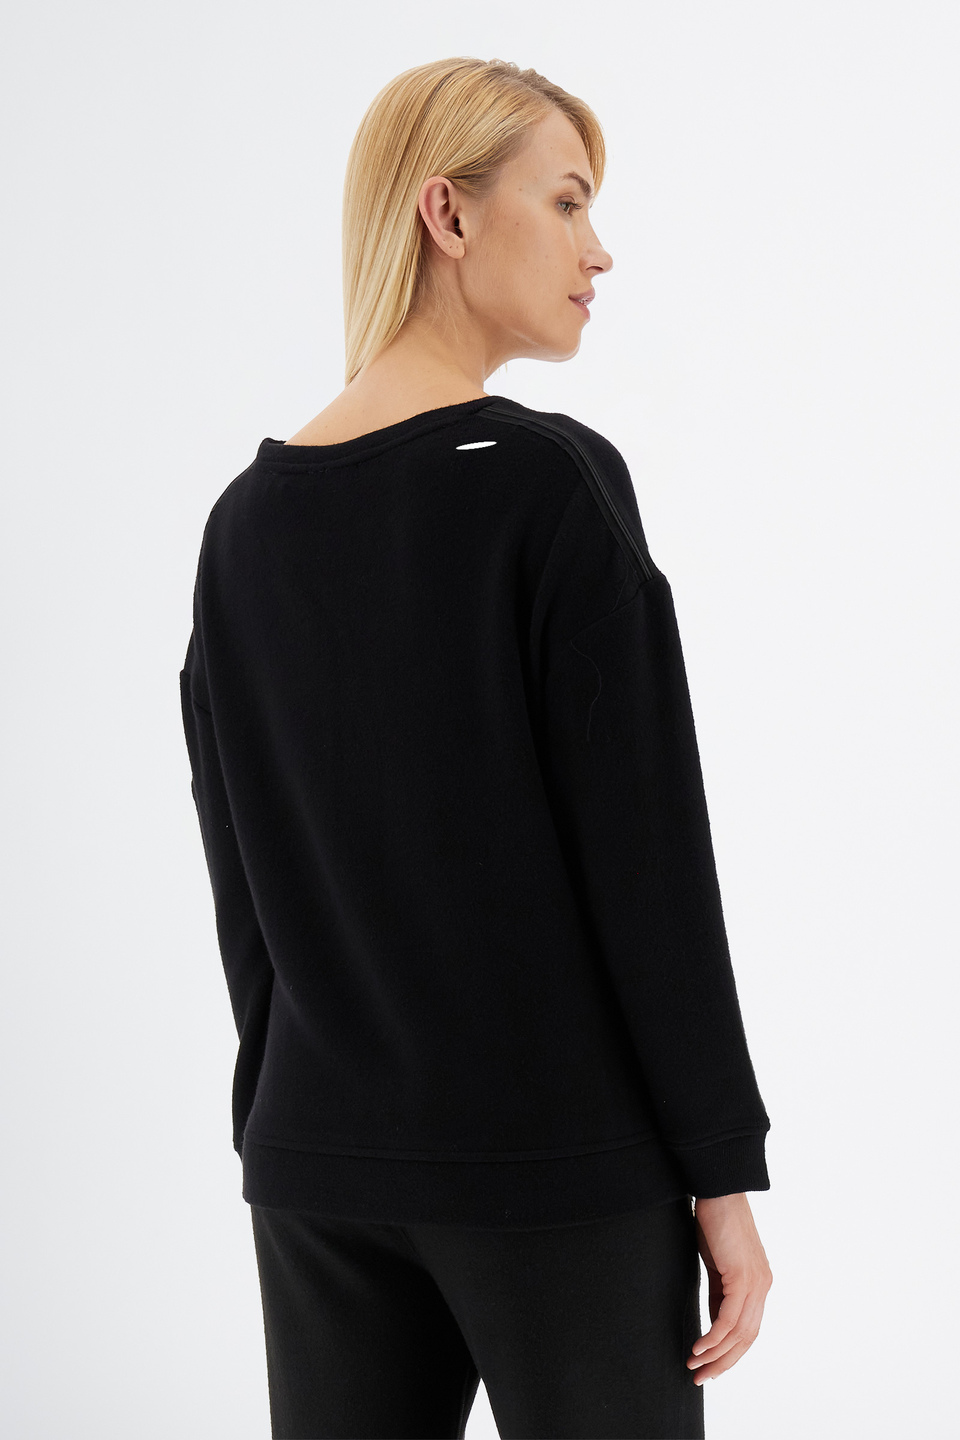 Damen-Sweatshirt mit hohem Kragen und langen Ärmeln | La Martina - Official Online Shop